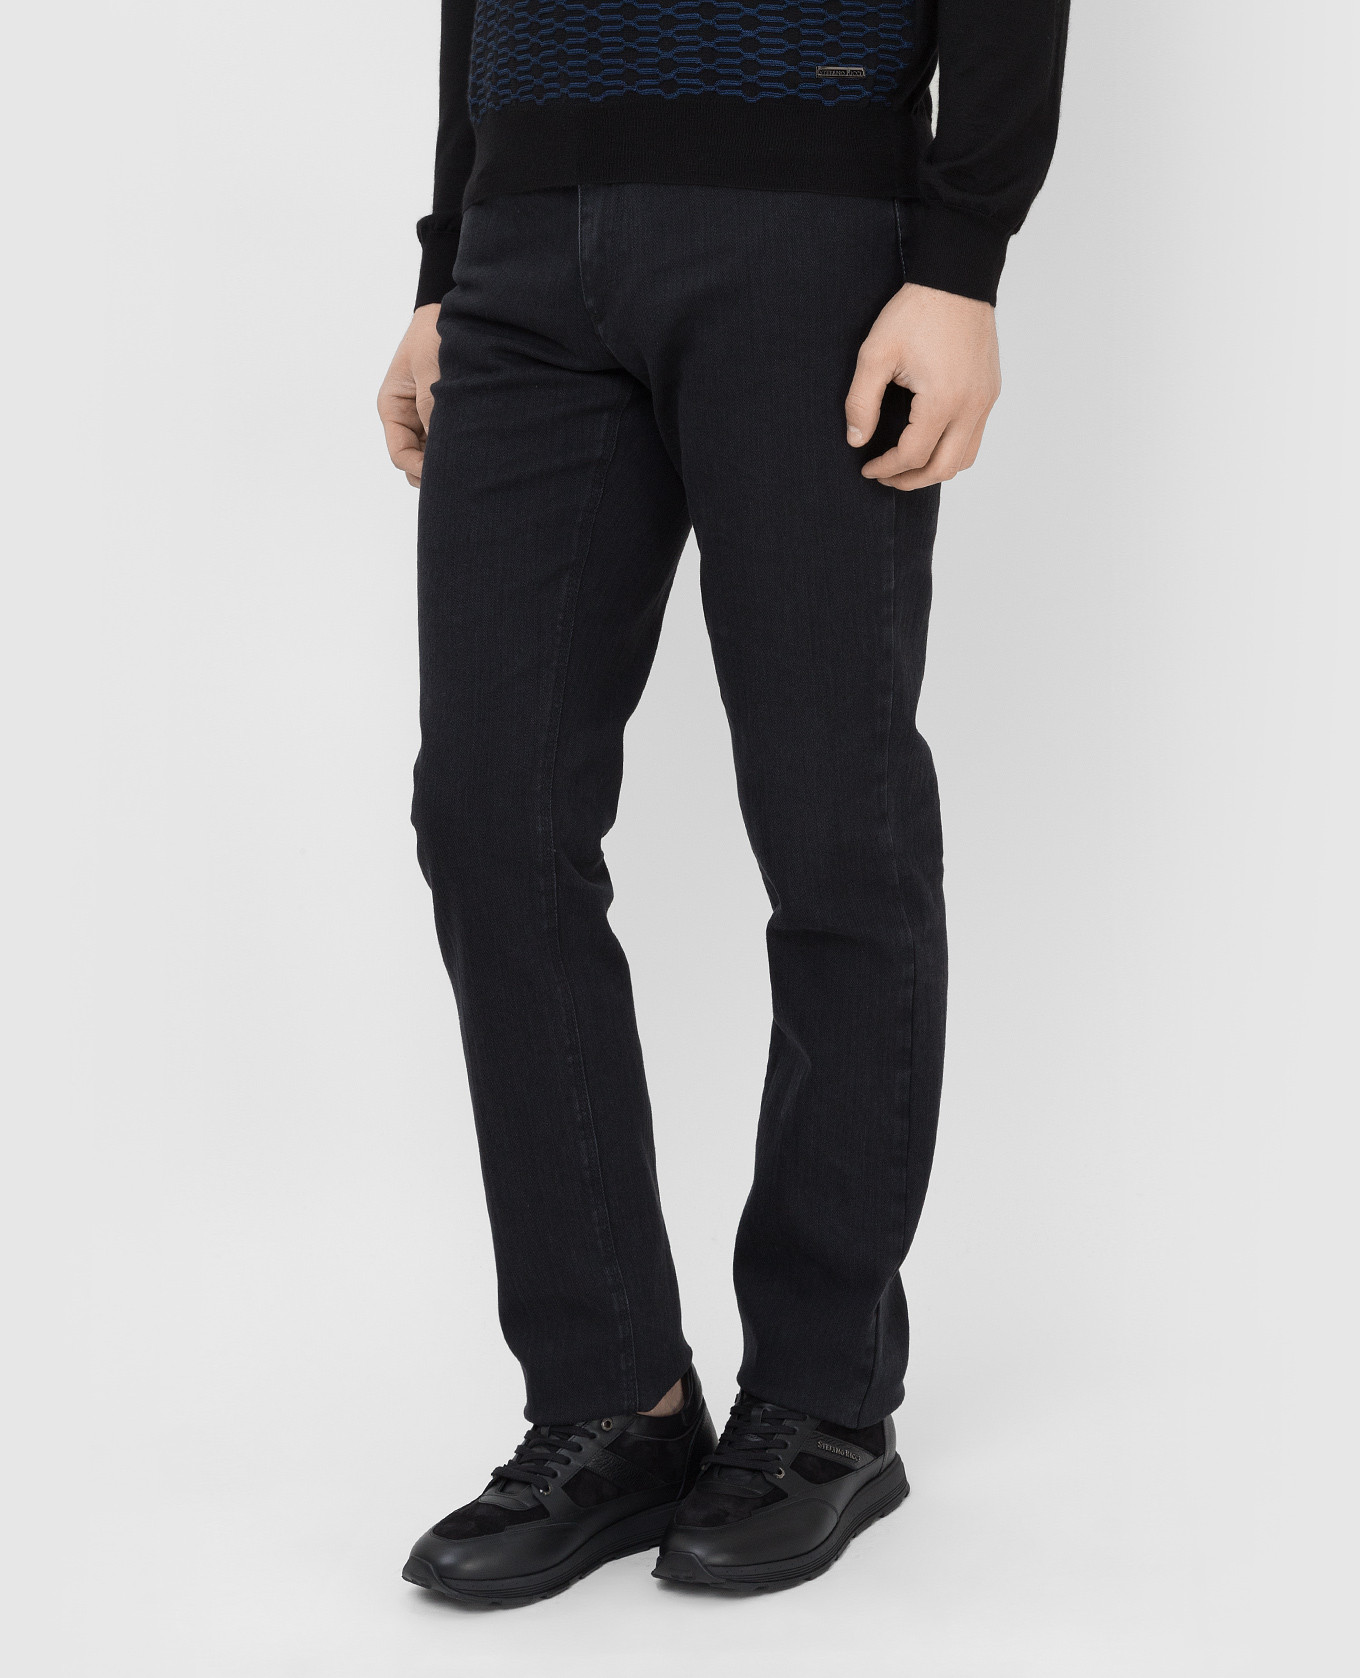 Stefano Ricci Темно-серые джинсы с вышивкой монограммы M8T1402080T1803 изображение 3